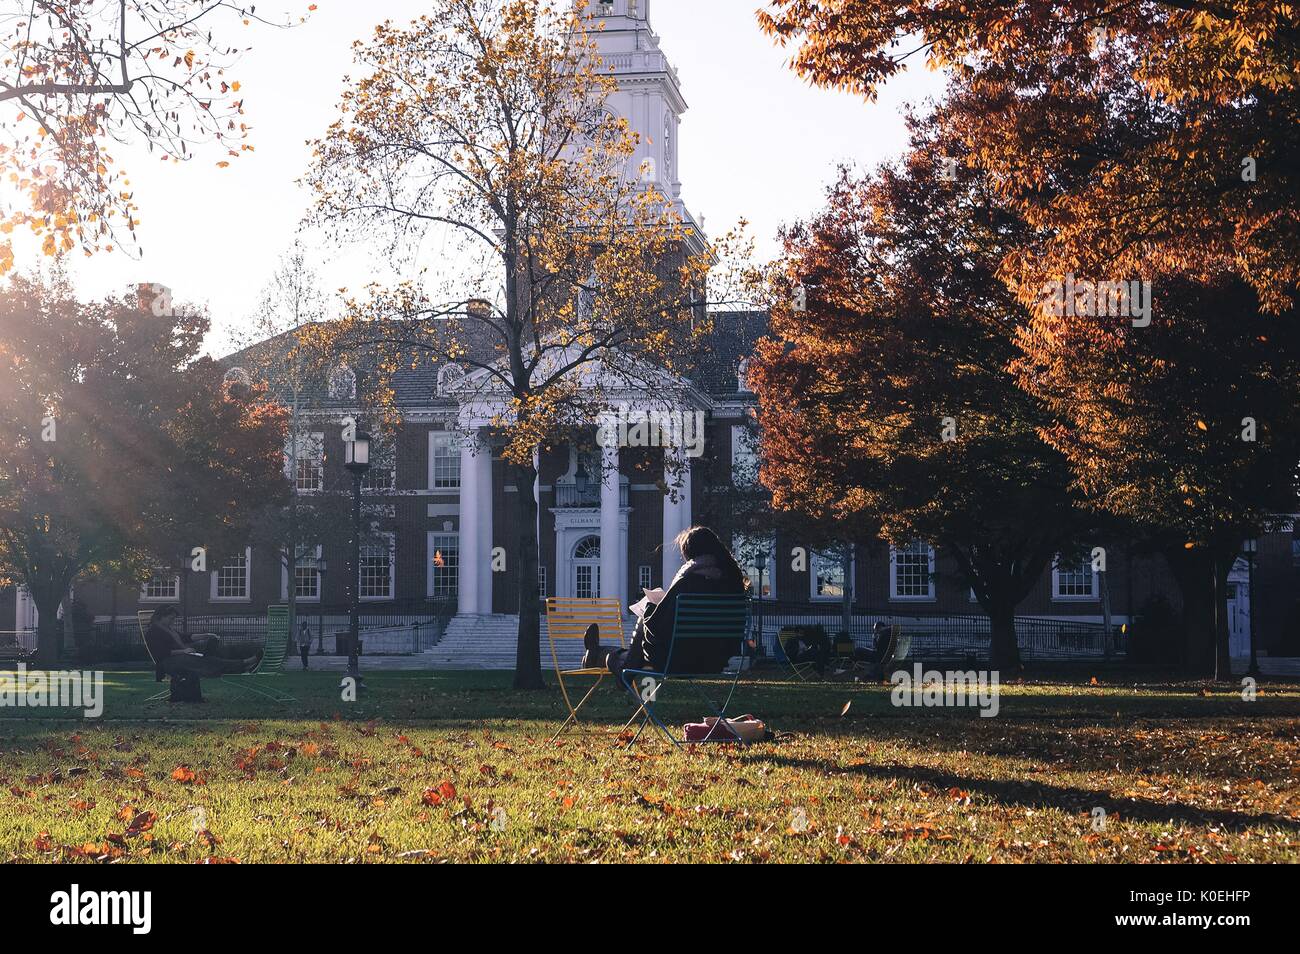 Les étudiants sont assis sur des chaises longues pour étudier devant Gilman Hall, sur le quadrilatère de Keyser, sur le campus Homewood de l'Université Johns Hopkins à Baltimore, Maryland, 2015. Avec la permission d'Eric Chen. Banque D'Images